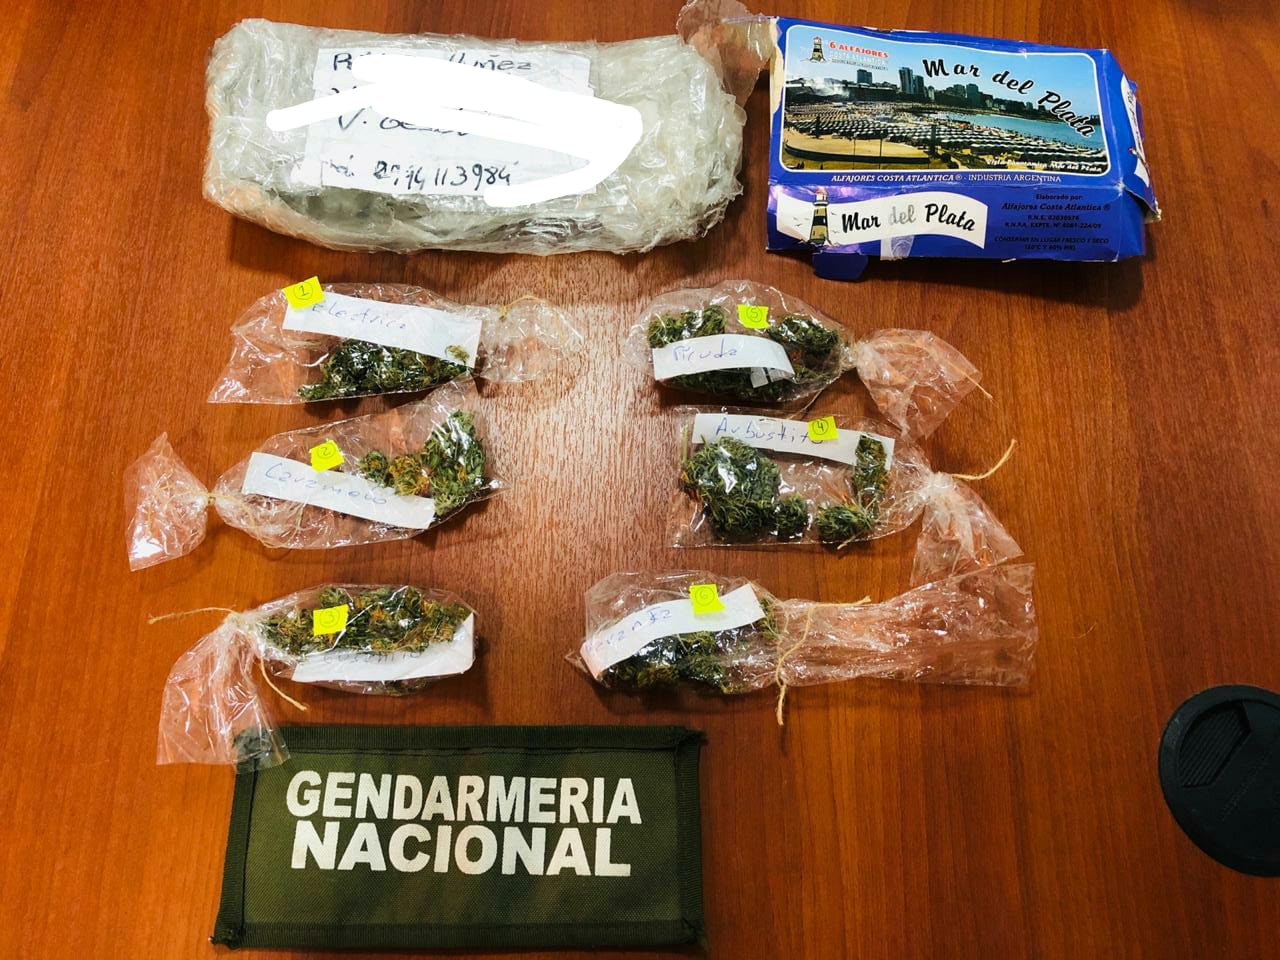 Los procedimientos se hicieron con la autorización del Juzgado Federal de Bariloche, aseguraron desde Gendarmería. (Foto Gentileza) 